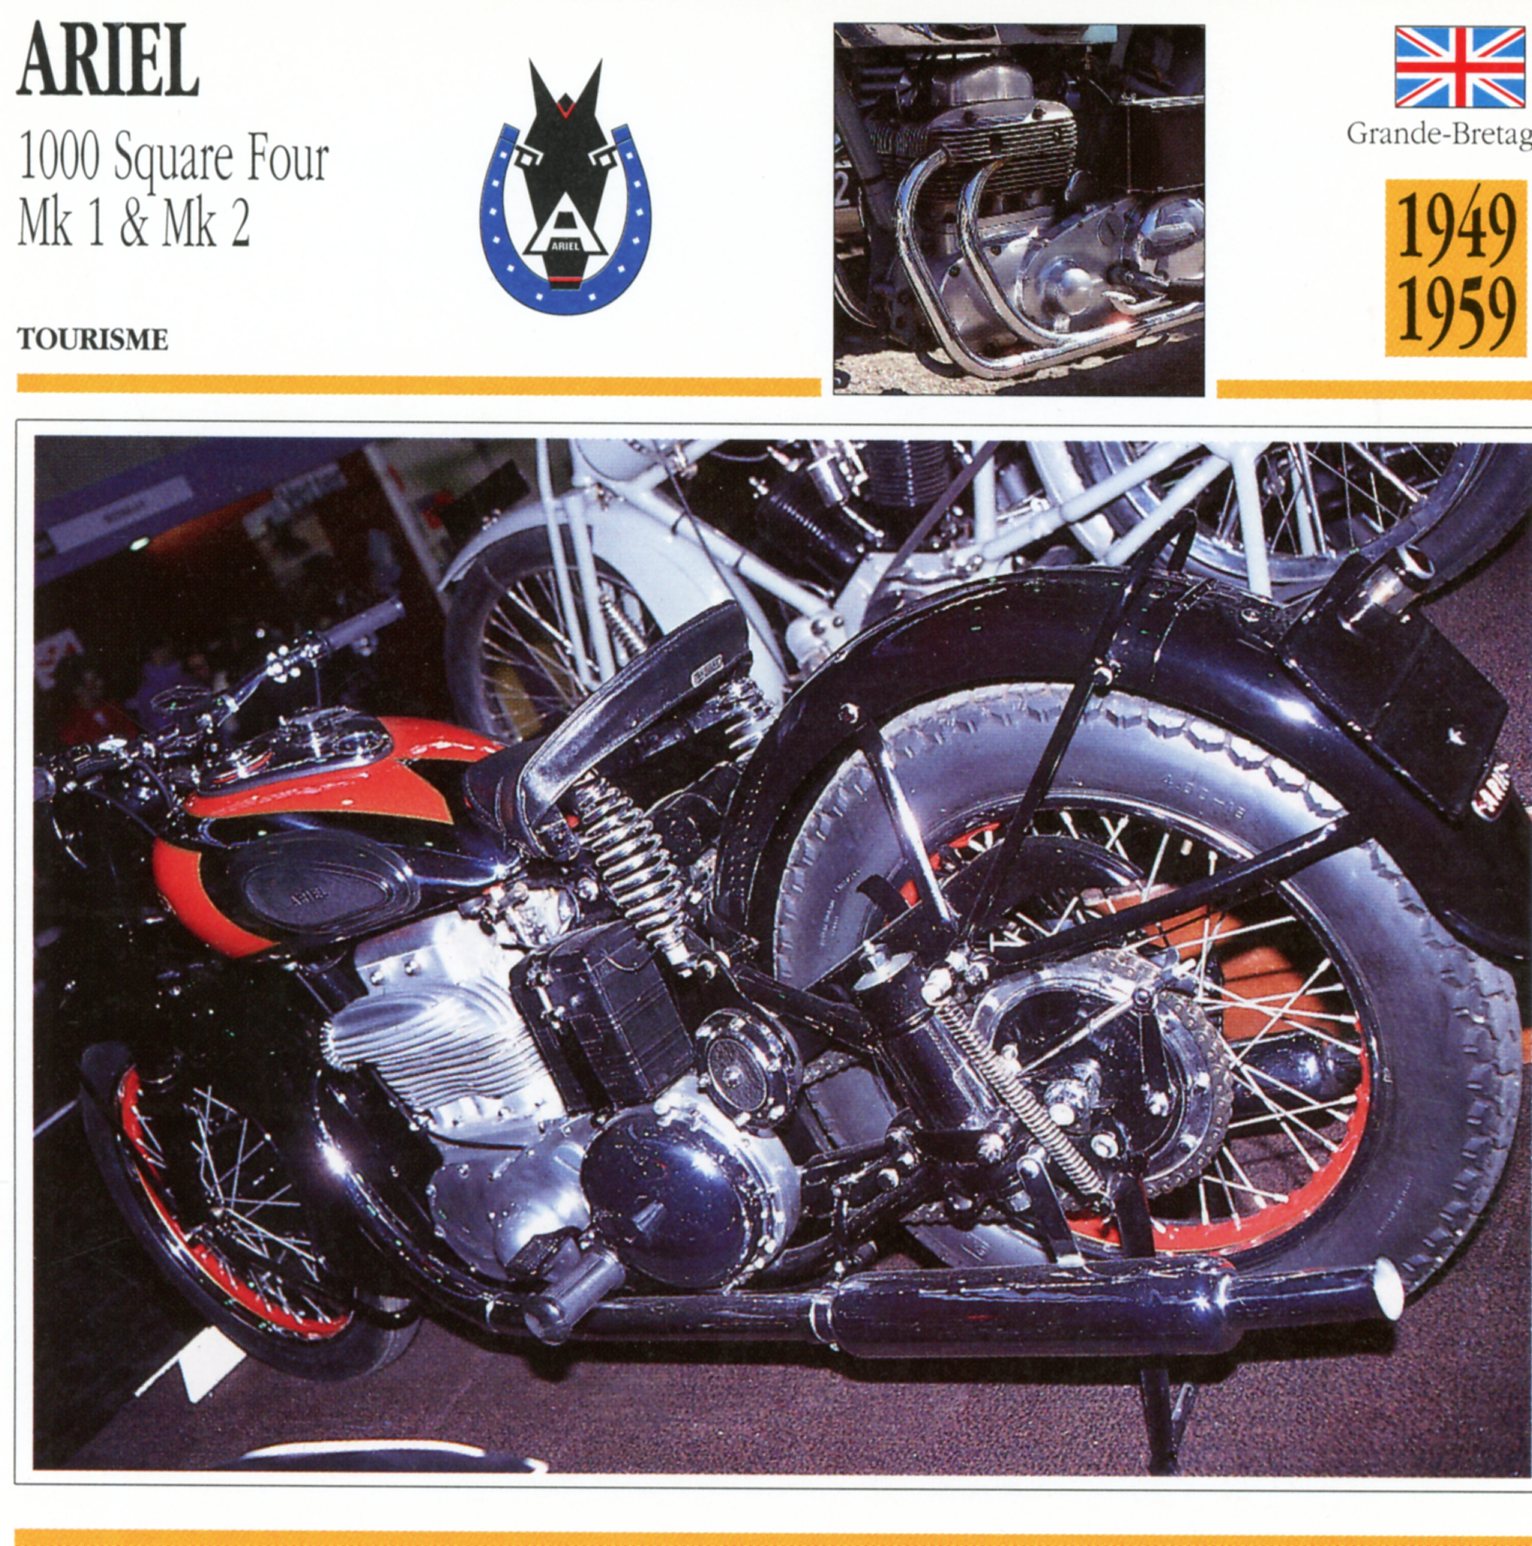 ARIEL 1000 SQUARE FOUR MK1 MK2 - CARTE CARD FICHE MOTO CARACTERISTIQUES